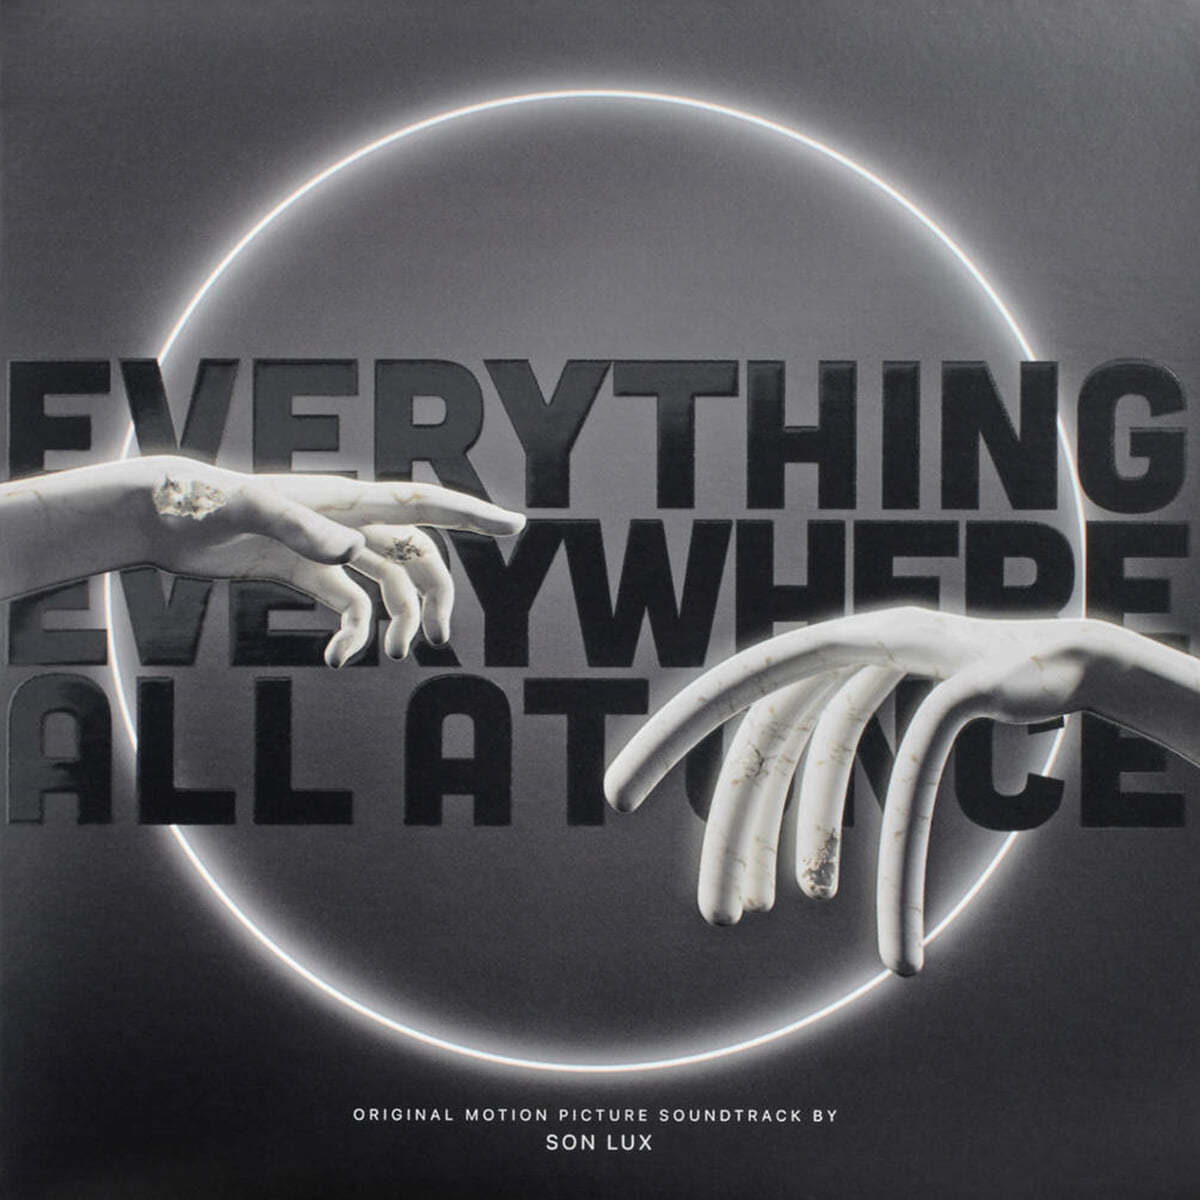 에브리씽 에브리웨어 올 앳 원스 영화음악 (Everything Everywhere All at Once OST by Son Lux) [블랙 &amp; 화이트 컬러 2LP]